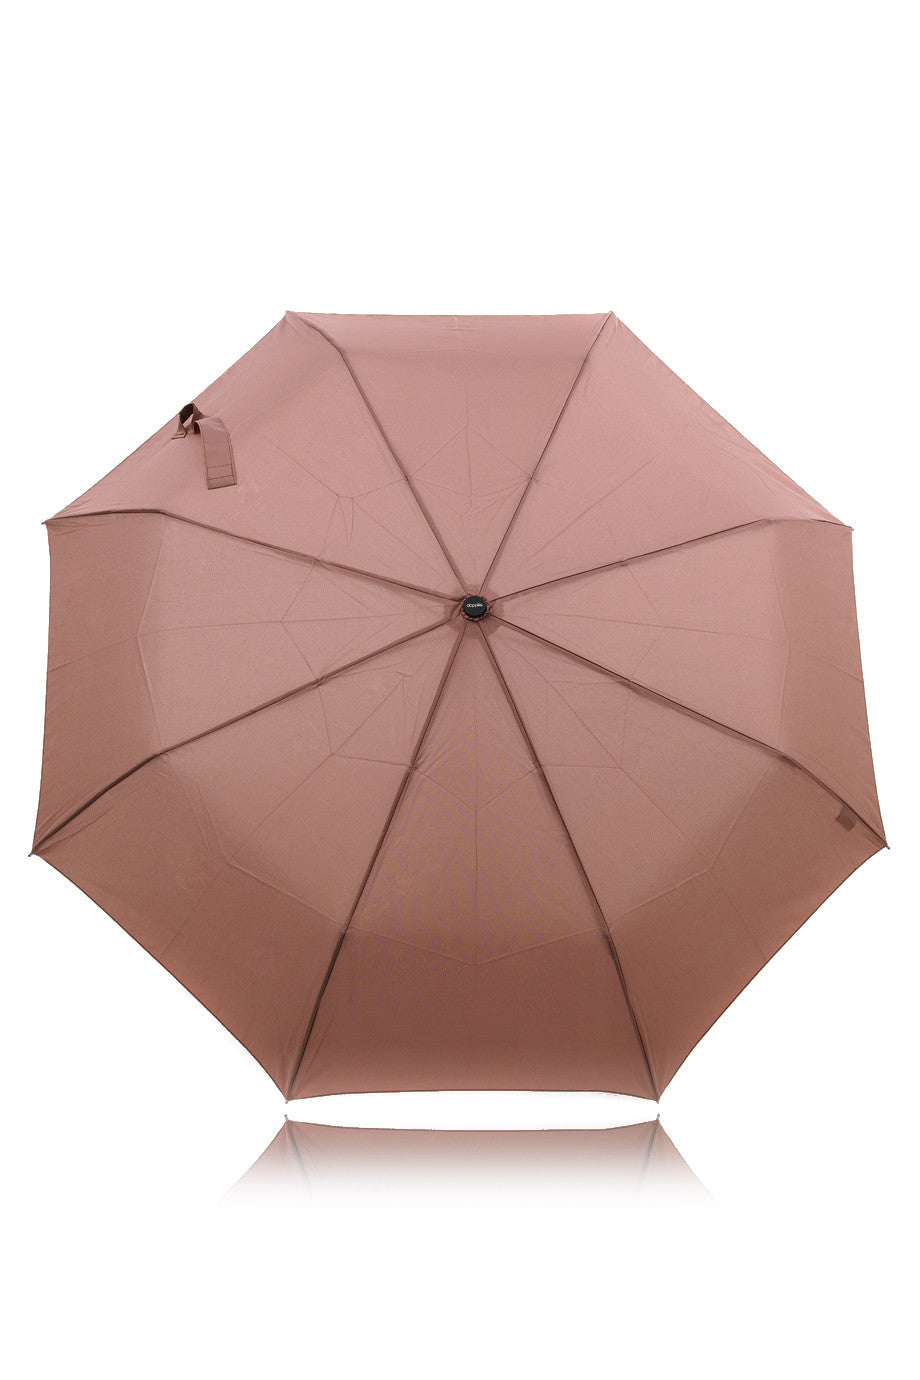 DOPPLER UNI Magic Fiber Umbrella – PRET-A-BEAUTE